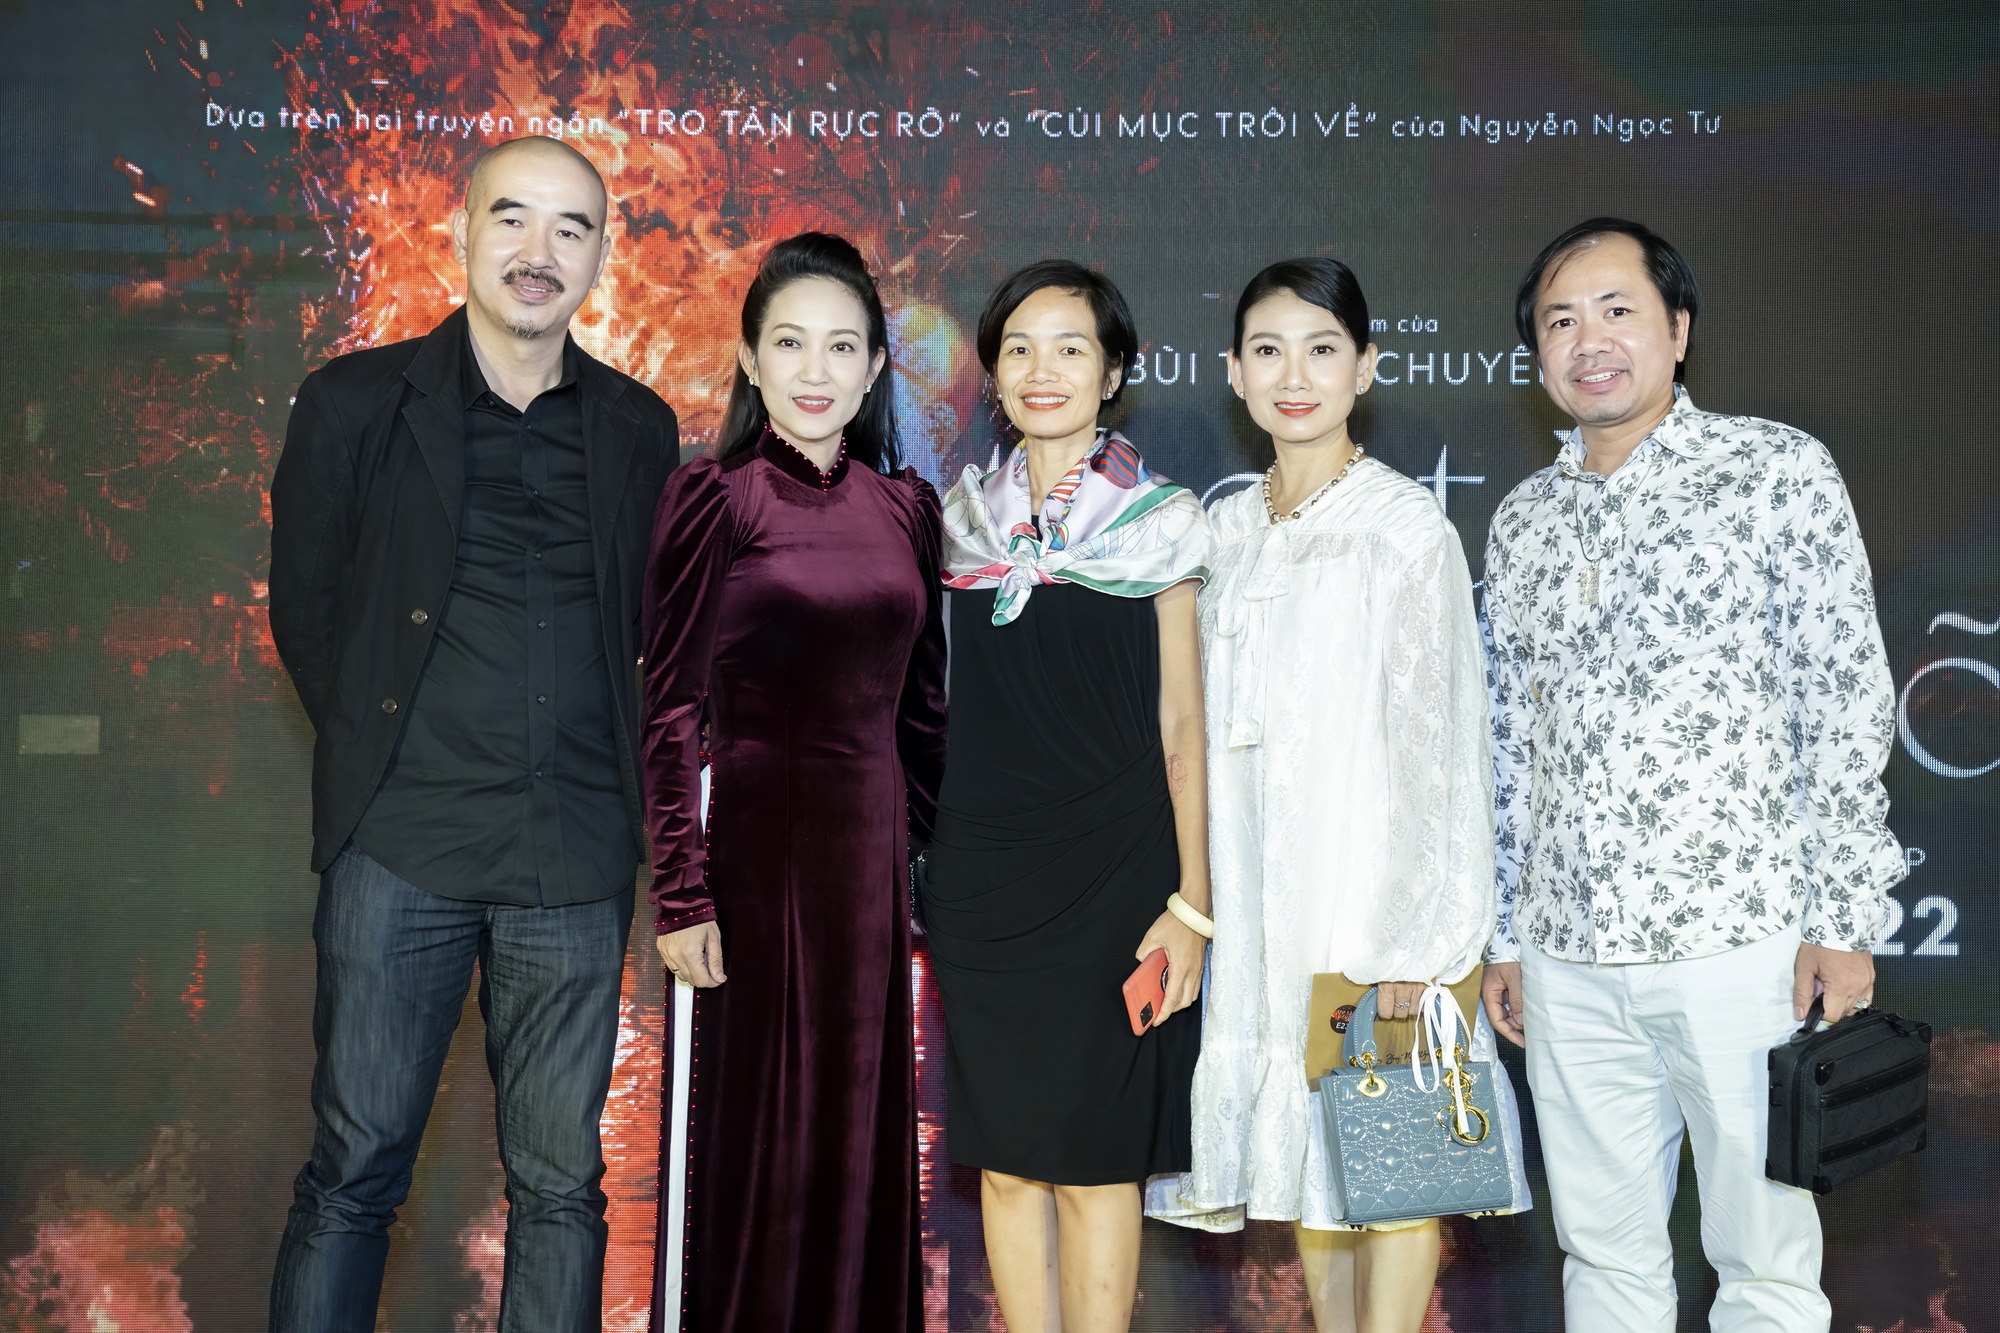 Nghệ sĩ Việt tề tựu mừng phim của Bùi Thạc Chuyên - Ảnh 6.